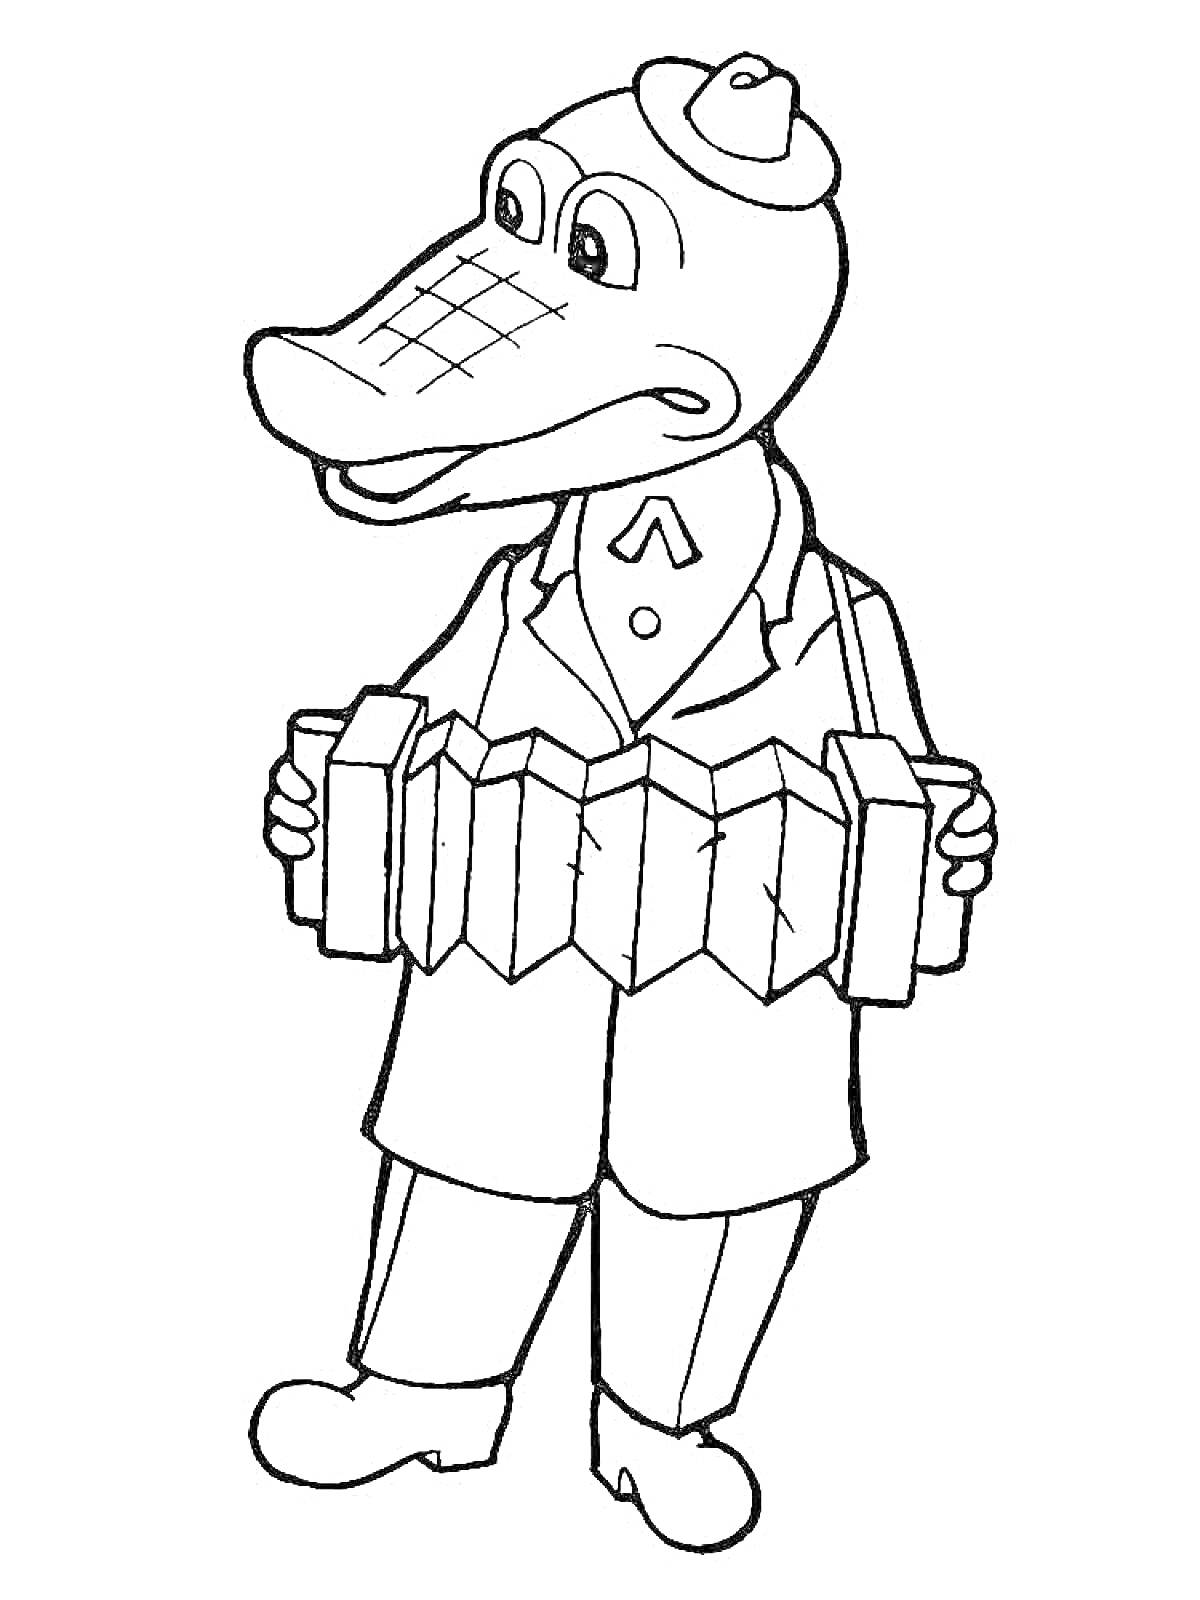 Раскраска Крокодил Гена в шляпе с аккордеоном